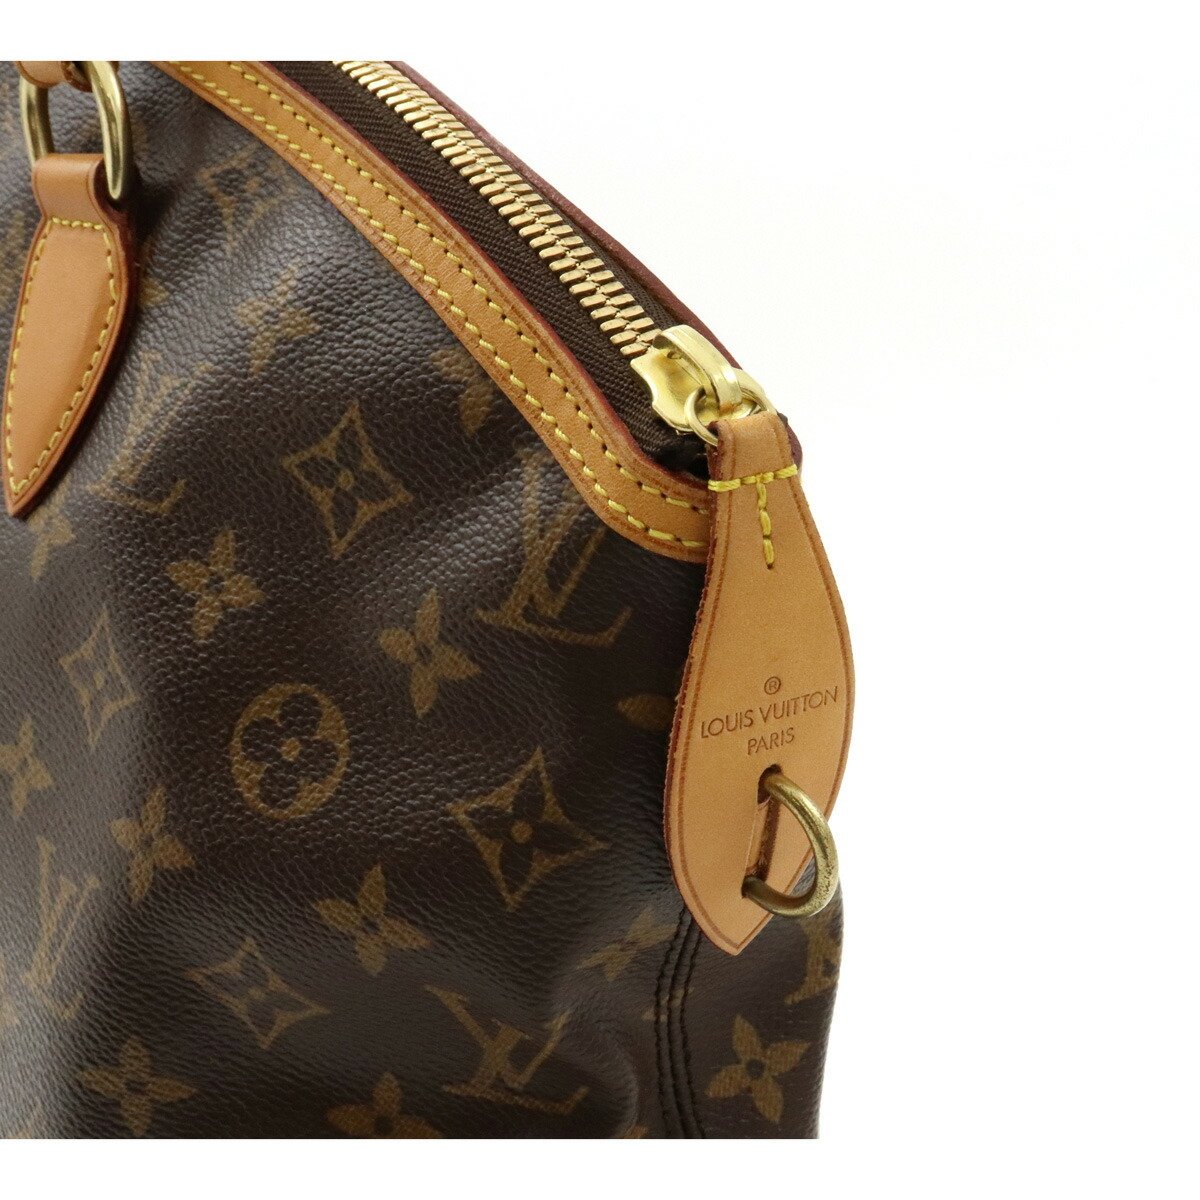 Authentic Louis Vuitton Rock It Horizontal Tote Bag- Hand Bag